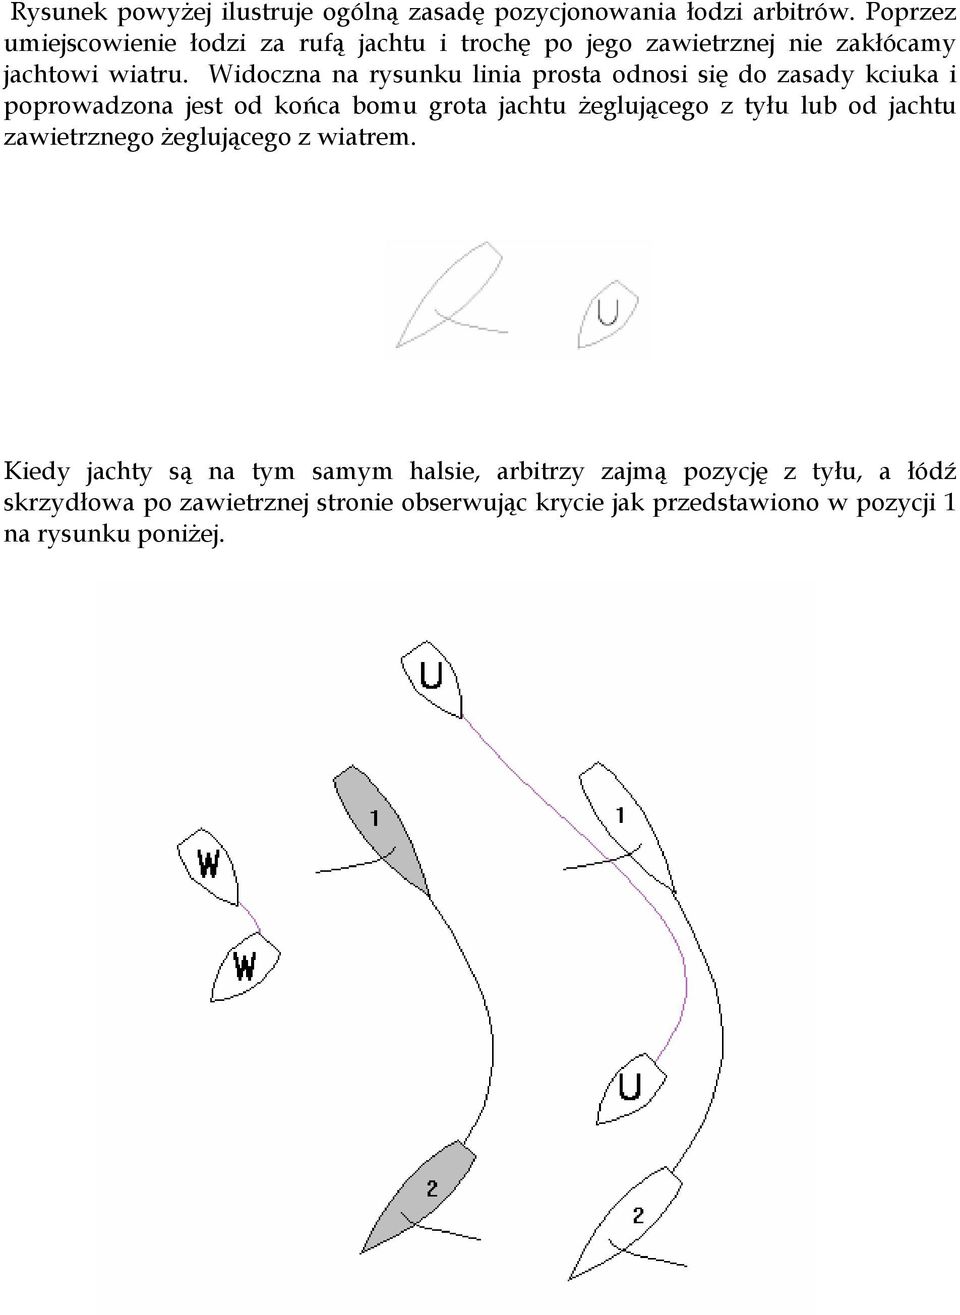 Widoczna na rysunku linia prosta odnosi się do zasady kciuka i poprowadzona jest od końca bomu grota jachtu żeglującego z tyłu lub